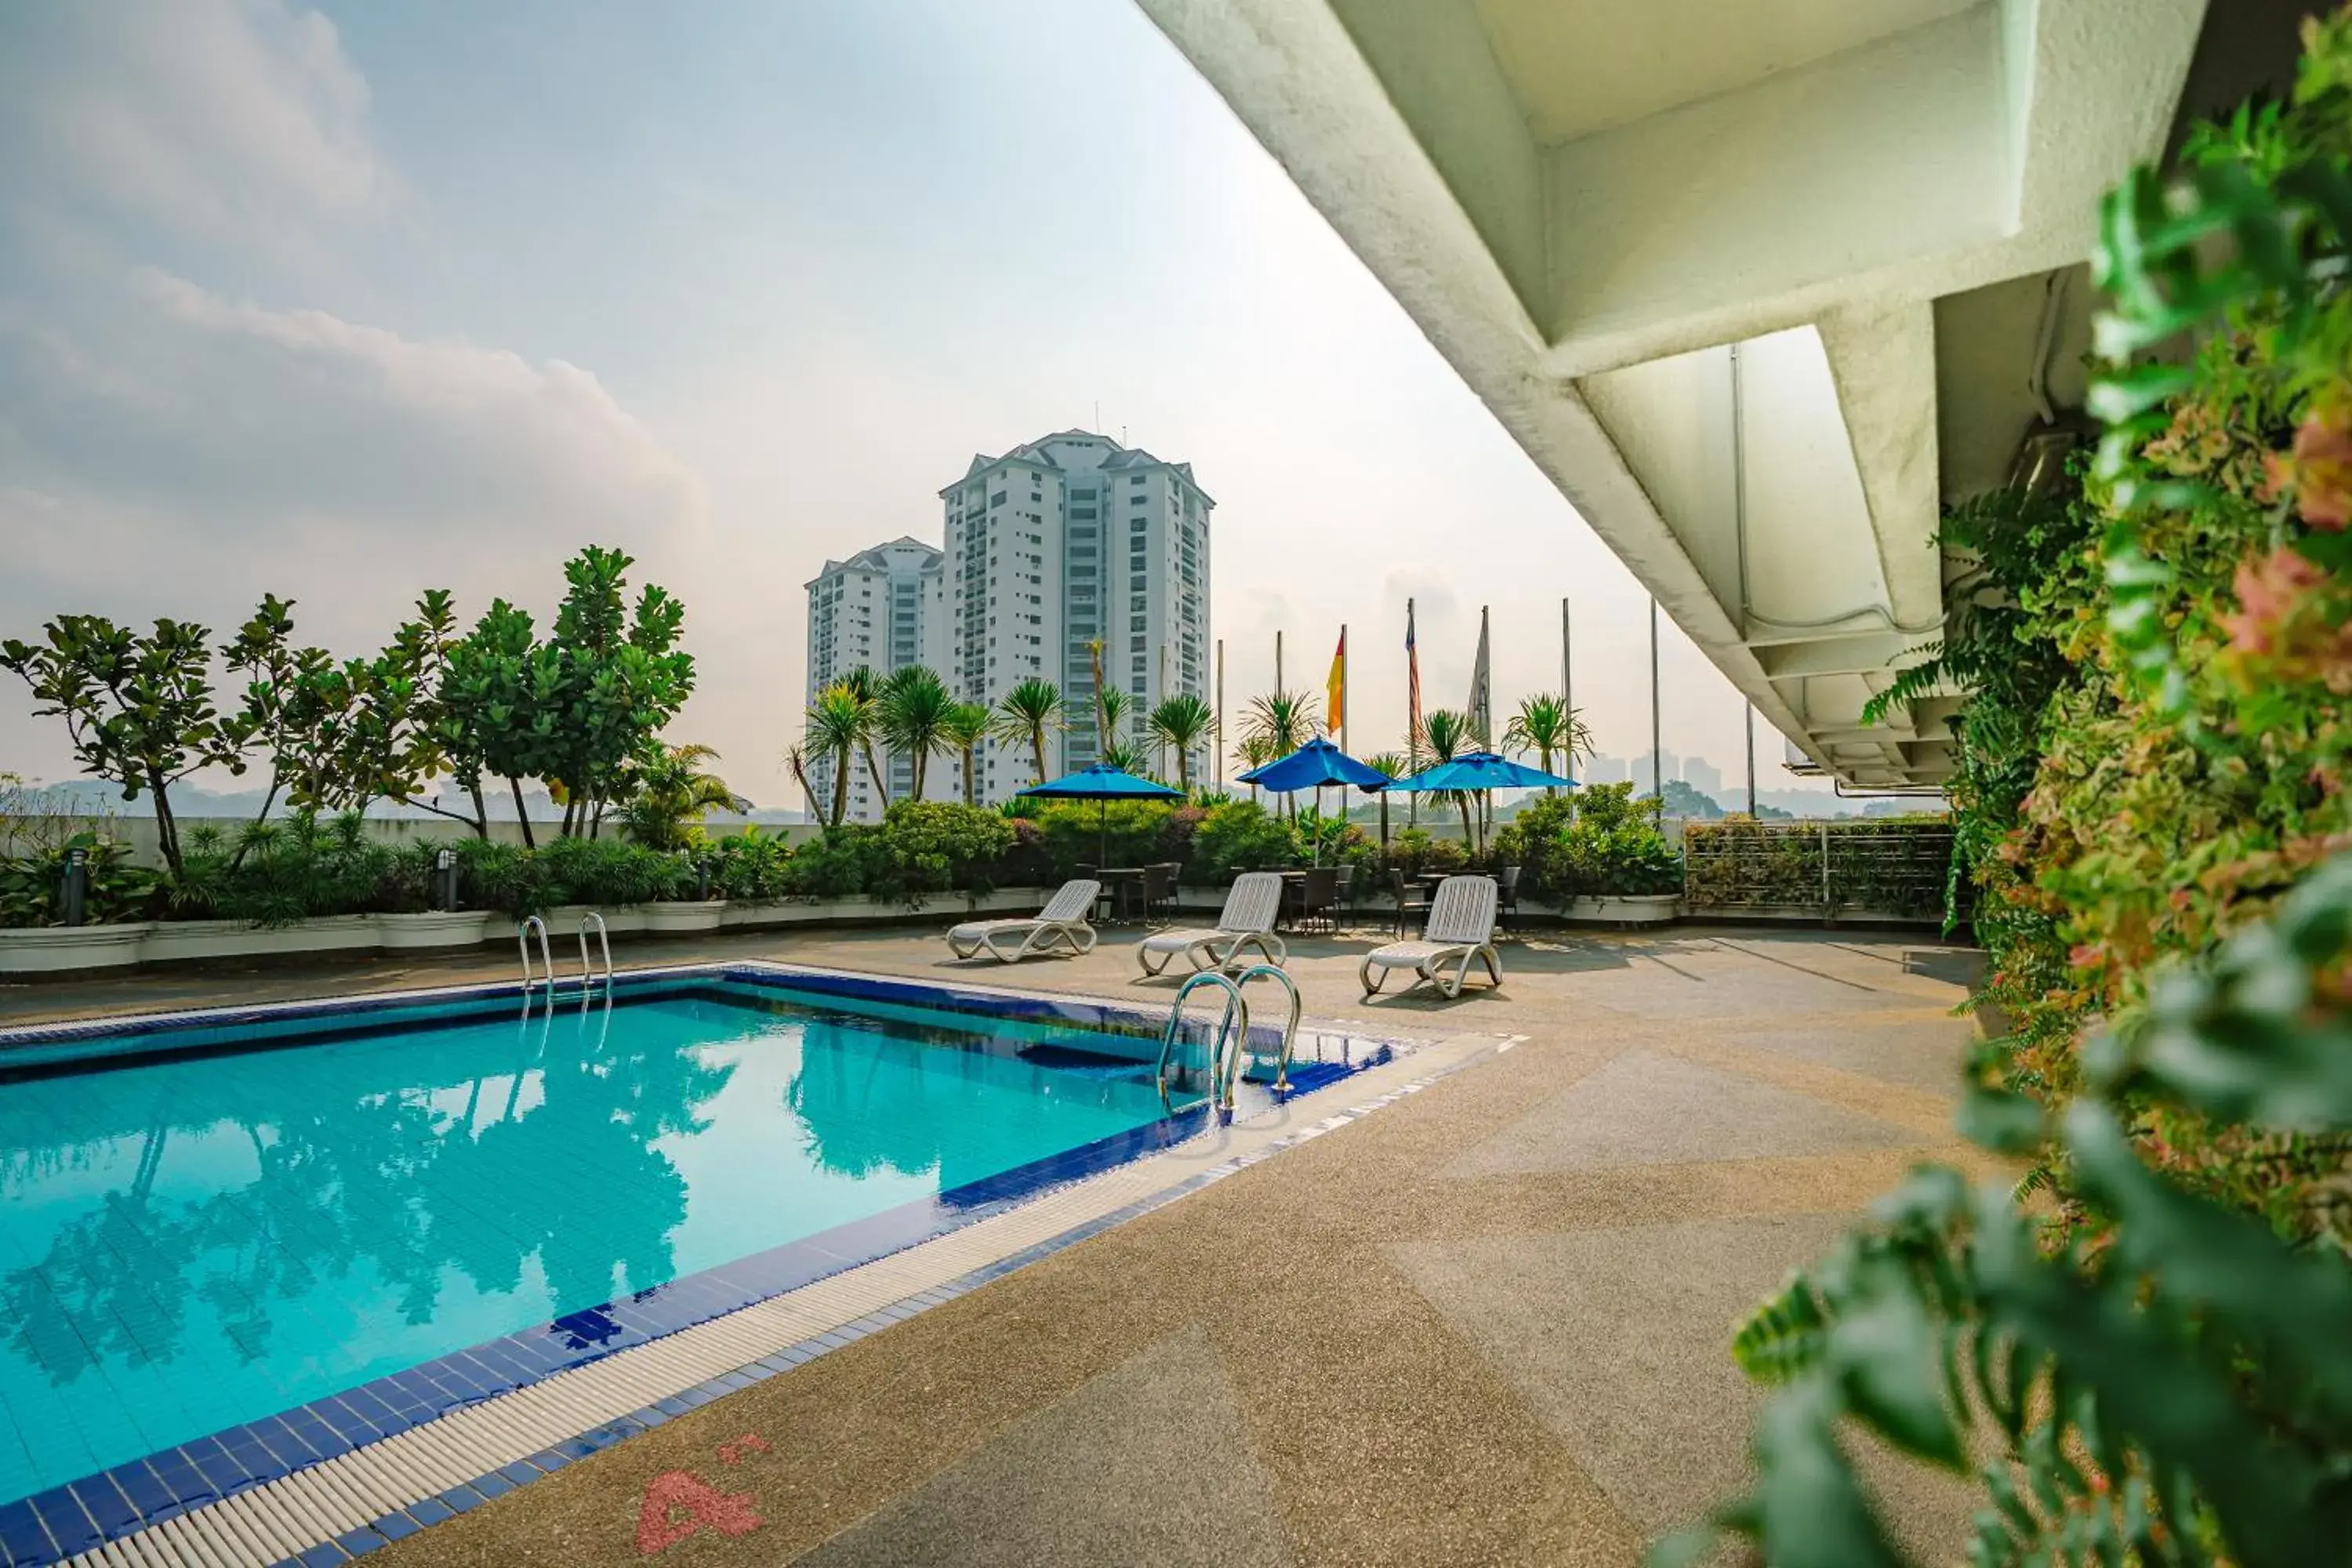 Swimming Pool in Crystal Crown Hotel Petaling Jaya